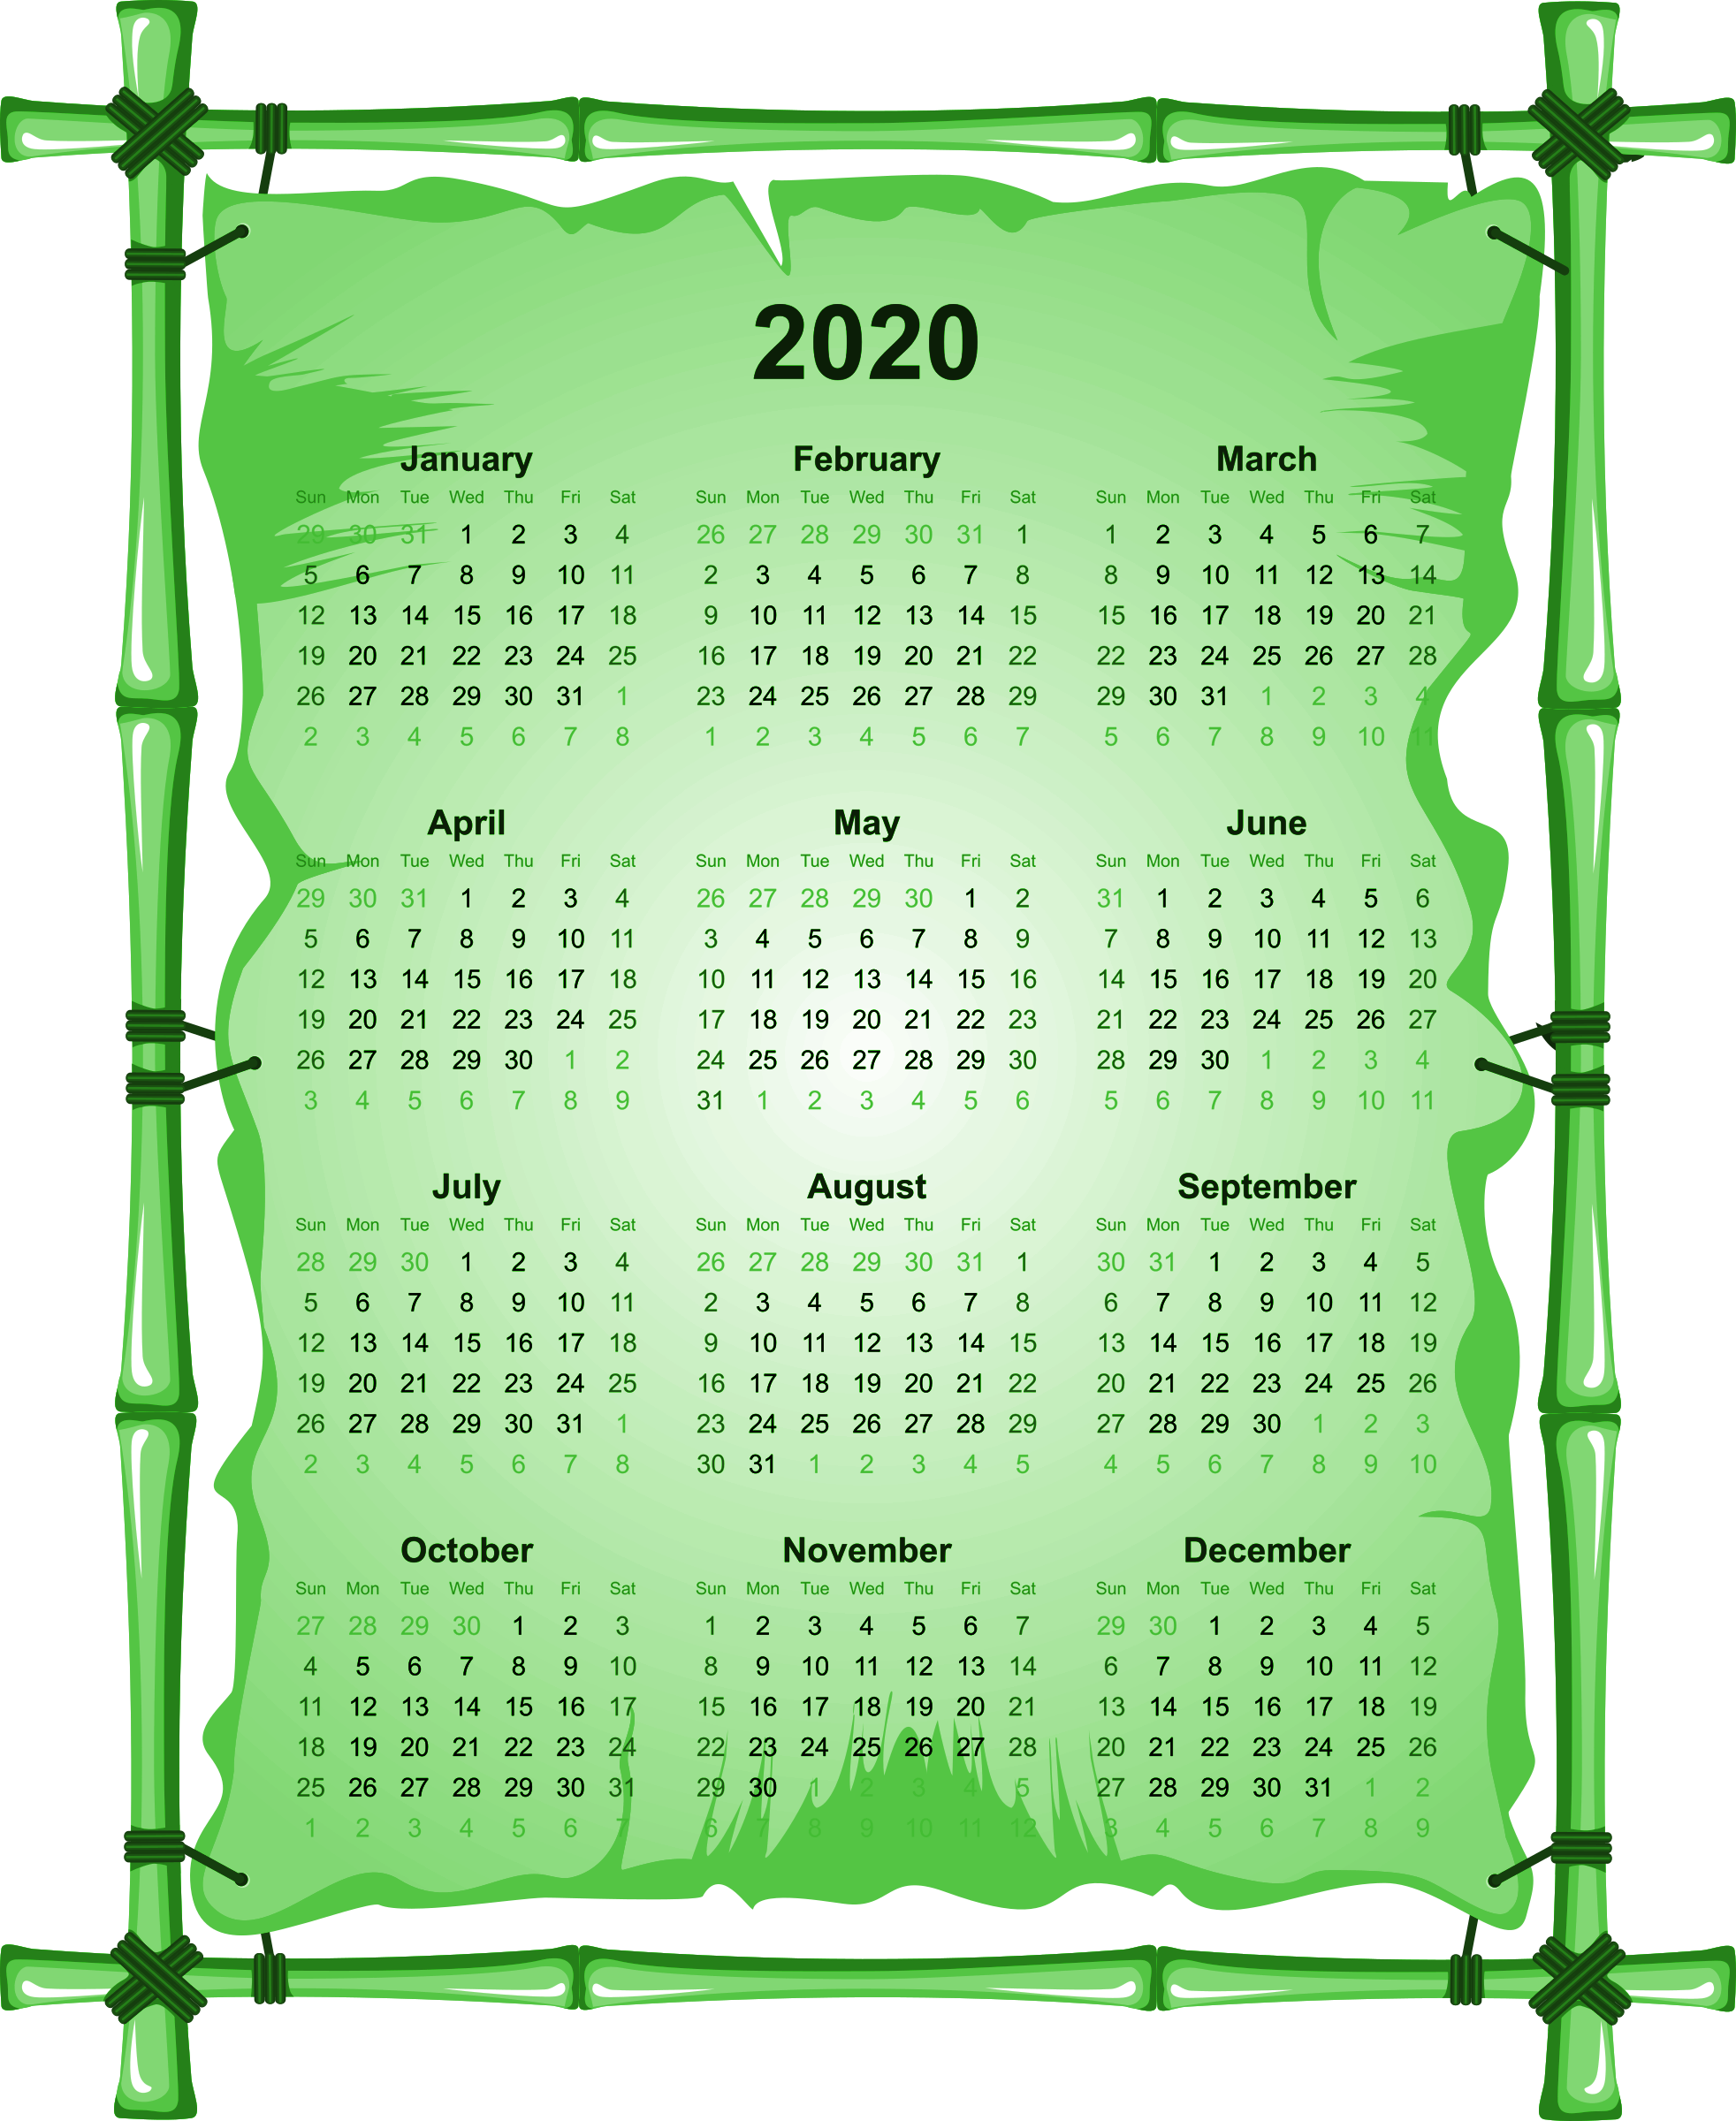 2020 Calendario Descargar imagen PNG Transparente